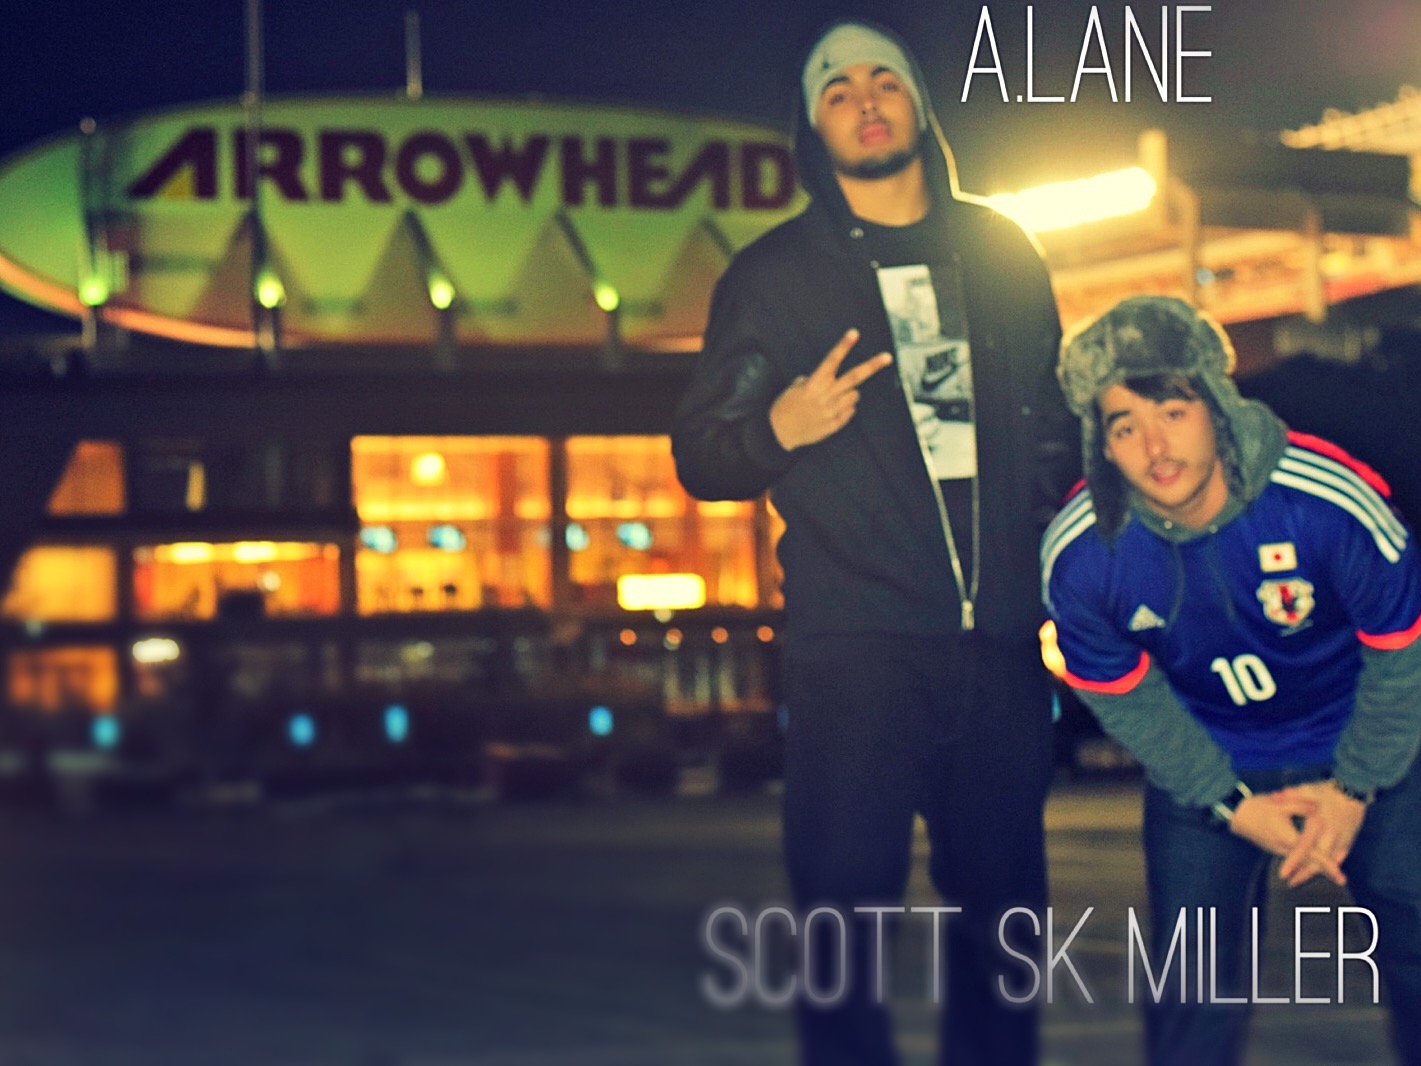  Ace, Scott SK Miller, A.Lane – Soundcloud Collection